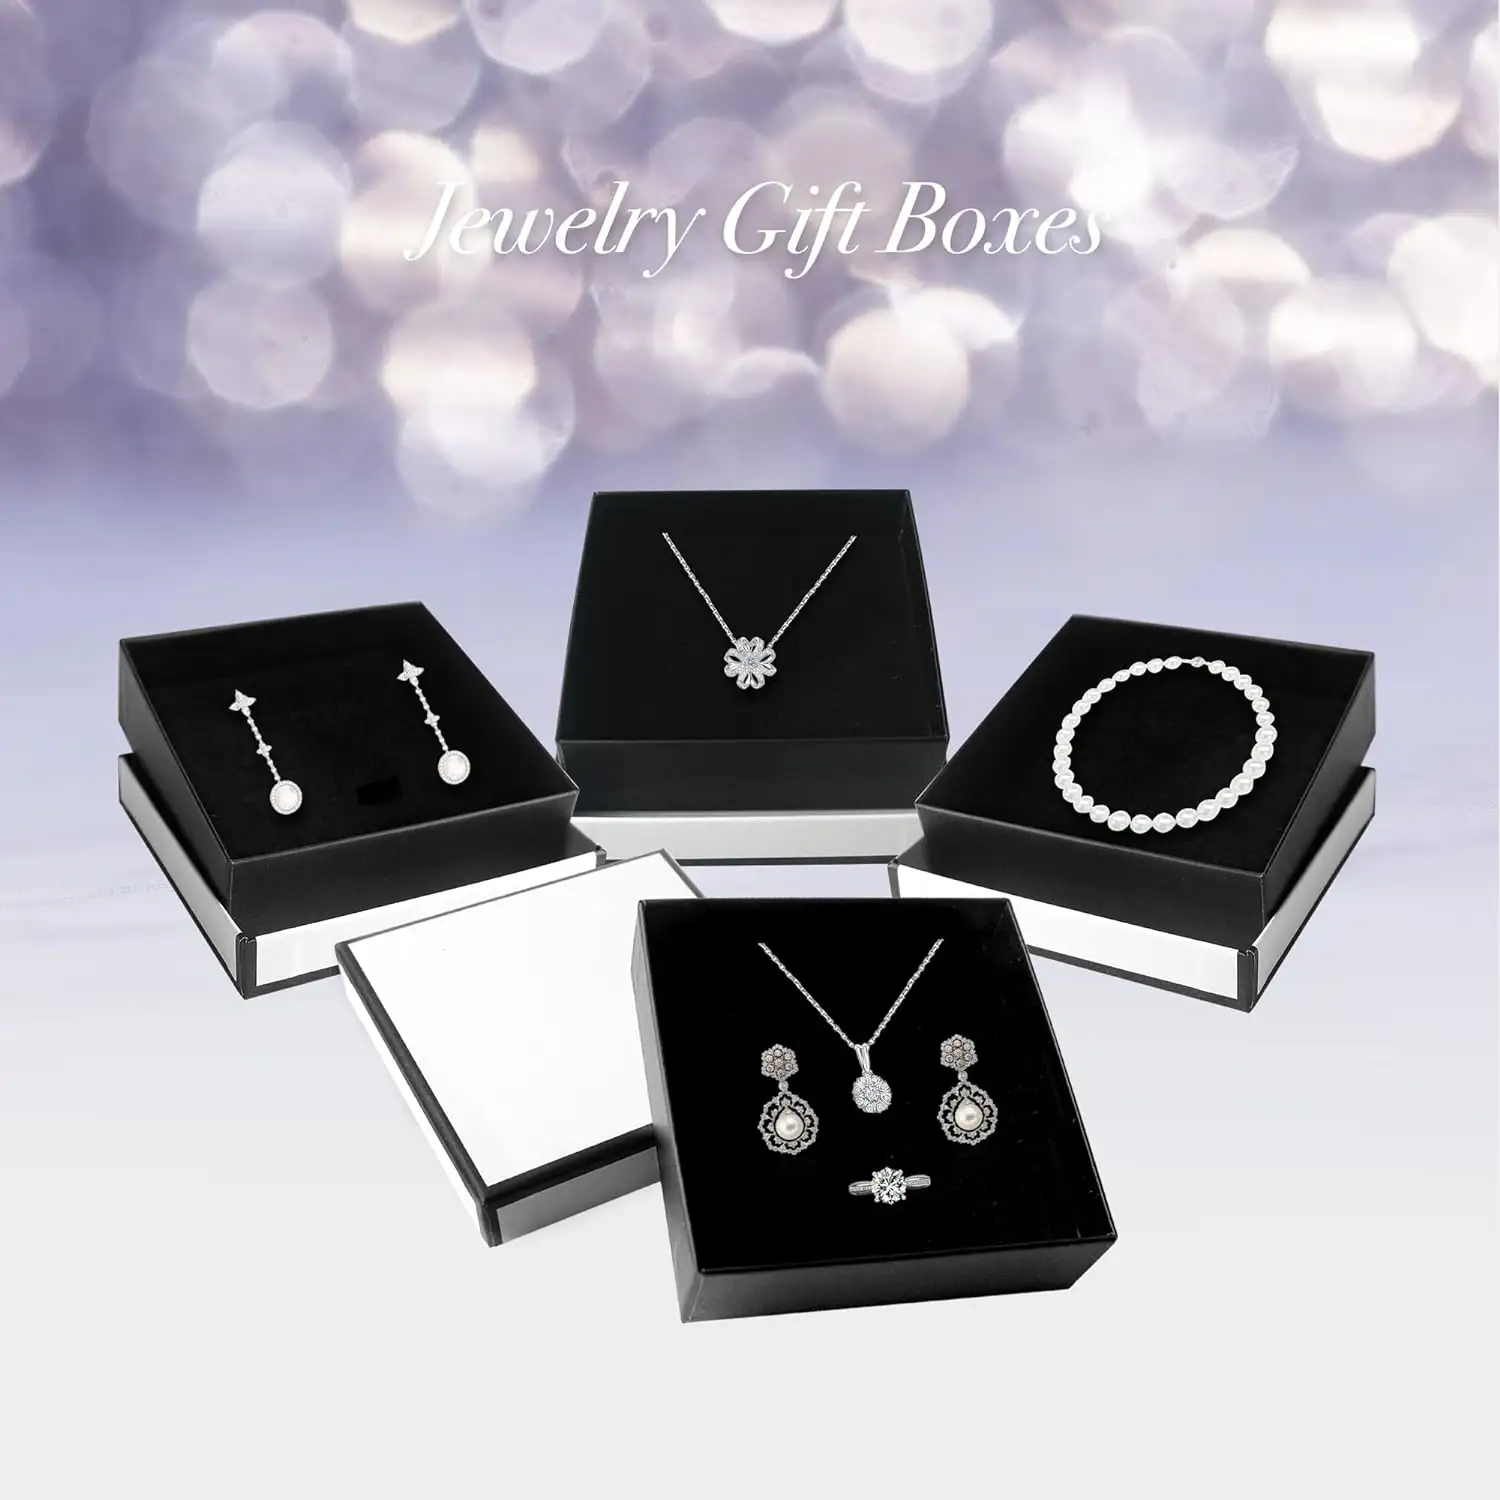 Boîte à bijoux bague personnalisée Emballage en carton avec logo en relief or Boîte à bijoux pendentif bracelet rose Emballage Joyero